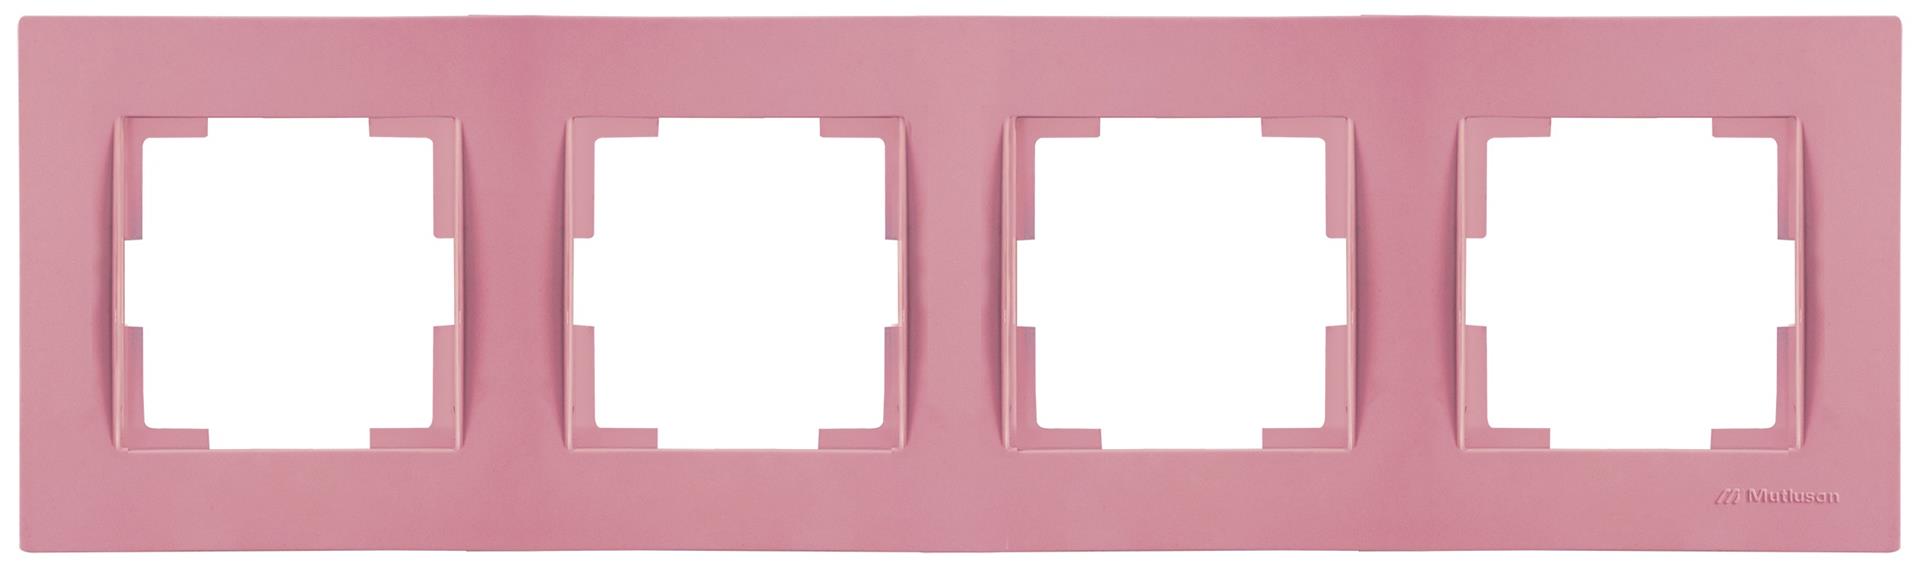 4 fach Rahmen horizontal Pink / Rosa (RITA Pastell Farben)